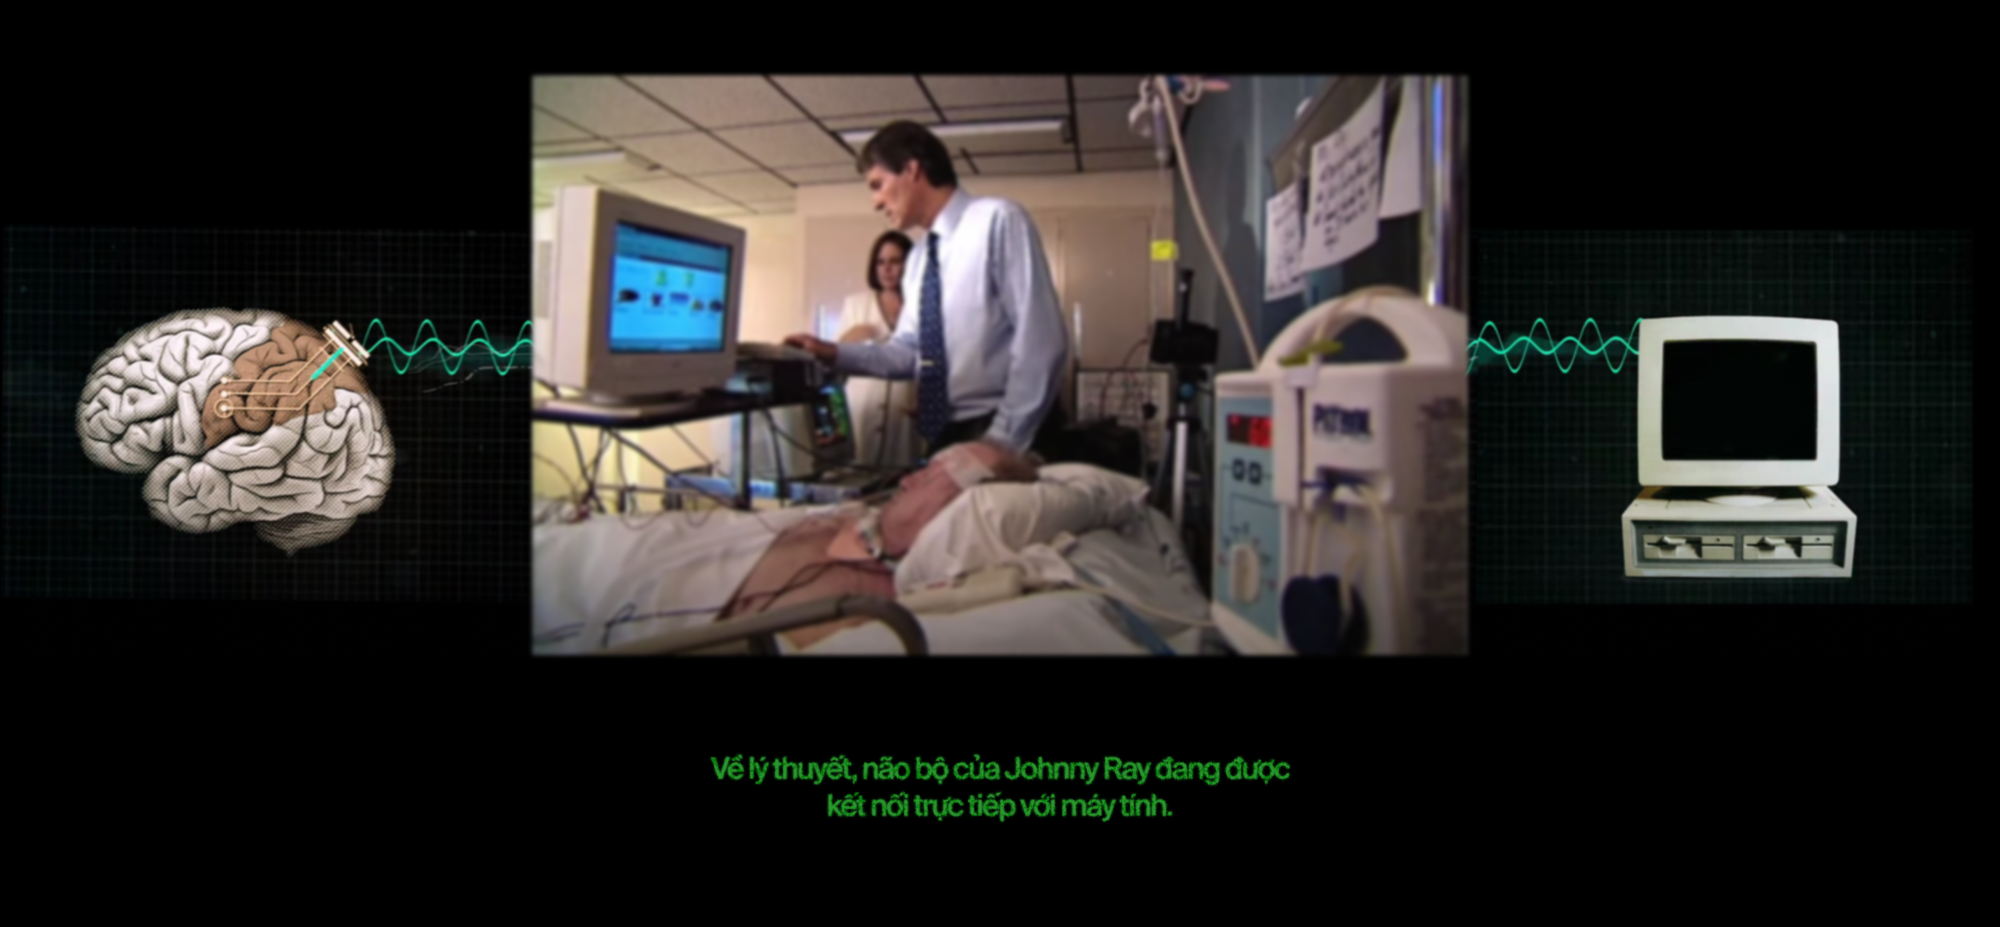 Bệnh nhân 23: Anh có muốn được chết không? Đây là cách những cỗ máy đọc suy nghĩ giúp người bị &quot;nhốt hồn&quot; cất tiếng nói - Ảnh 23.